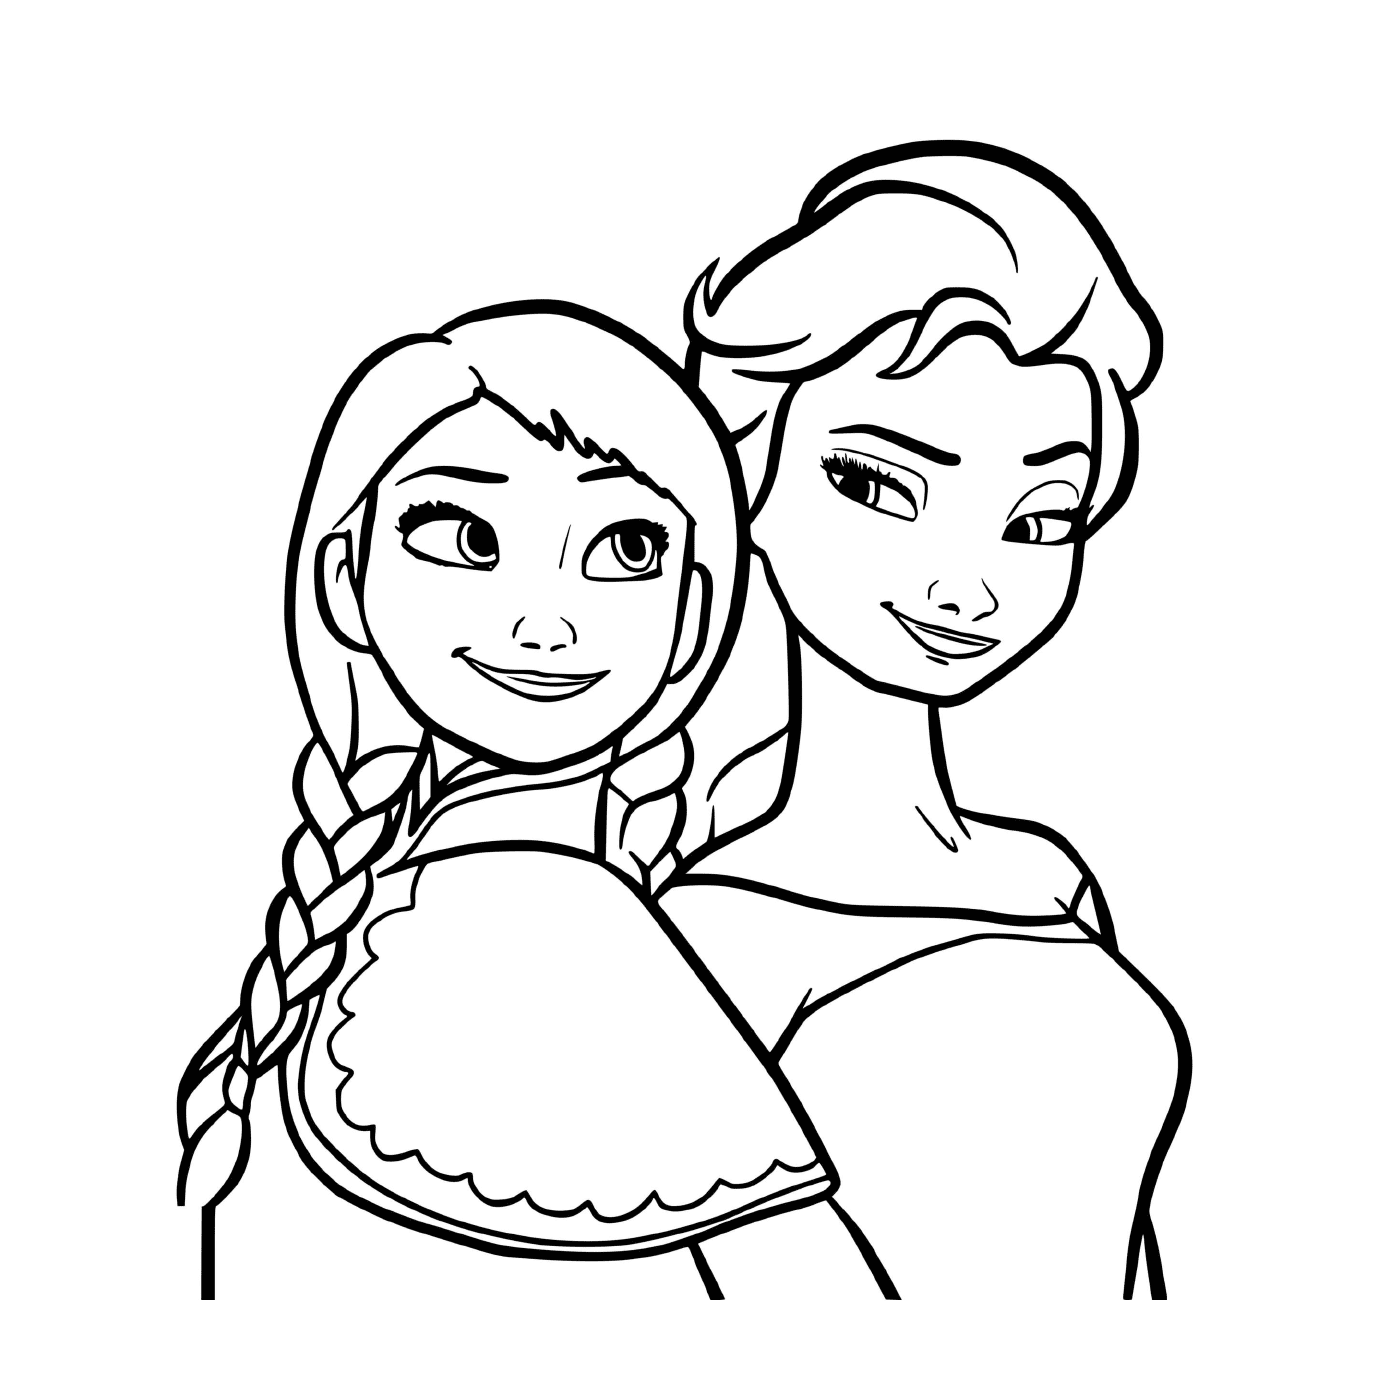  Принцессы королевства, Эльза и Анна 